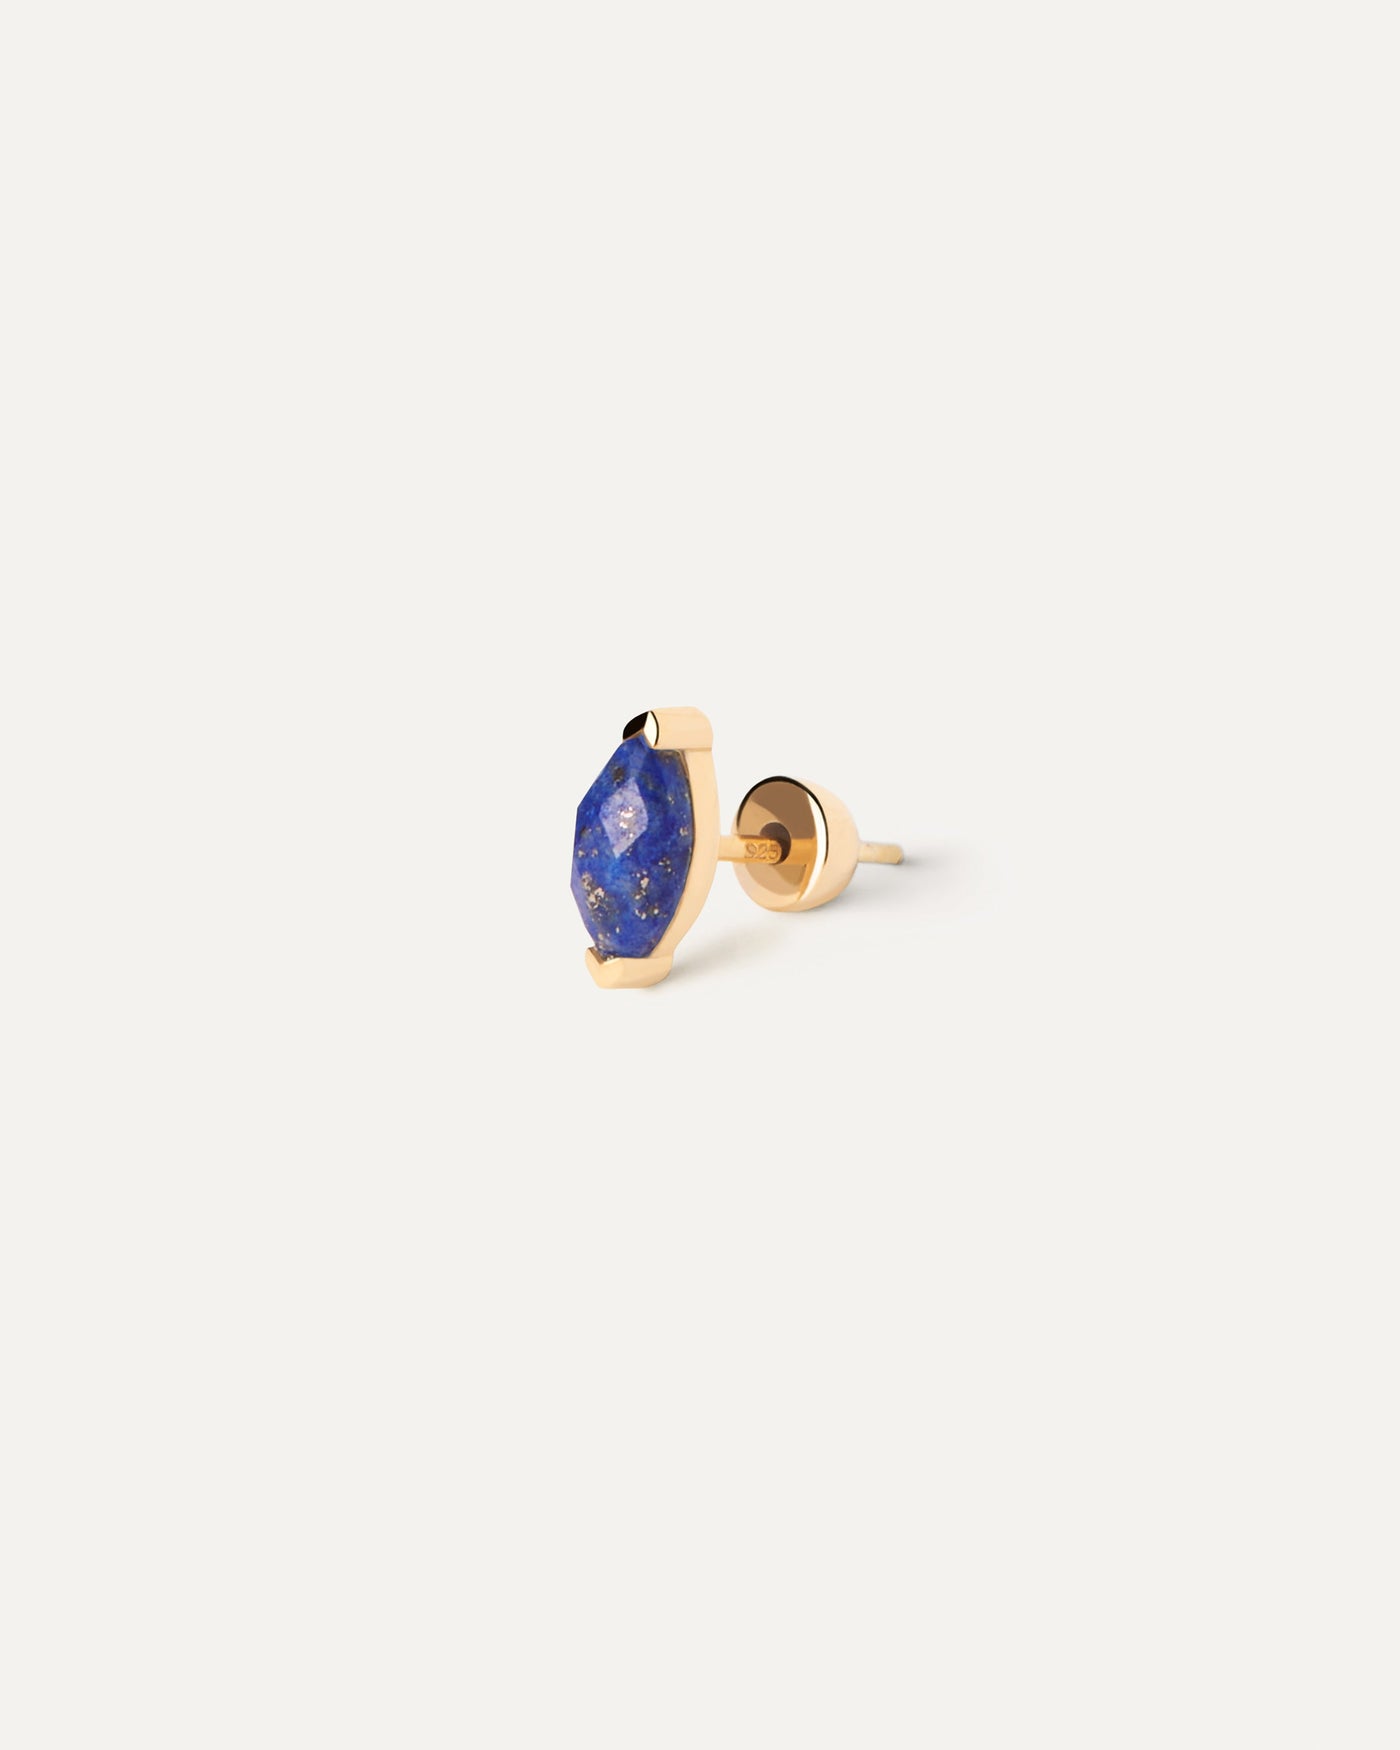 Boucle D'Oreille Individuelle Lapis-Lazuli Nomad. Boucle d'oreille clou plaquée or ornée d'une pierre fine bleue taillée en marquise. Découvrez les dernières nouveautés de chez PDPAOLA. Commandez et recevez votre bijou en toute sérénité.